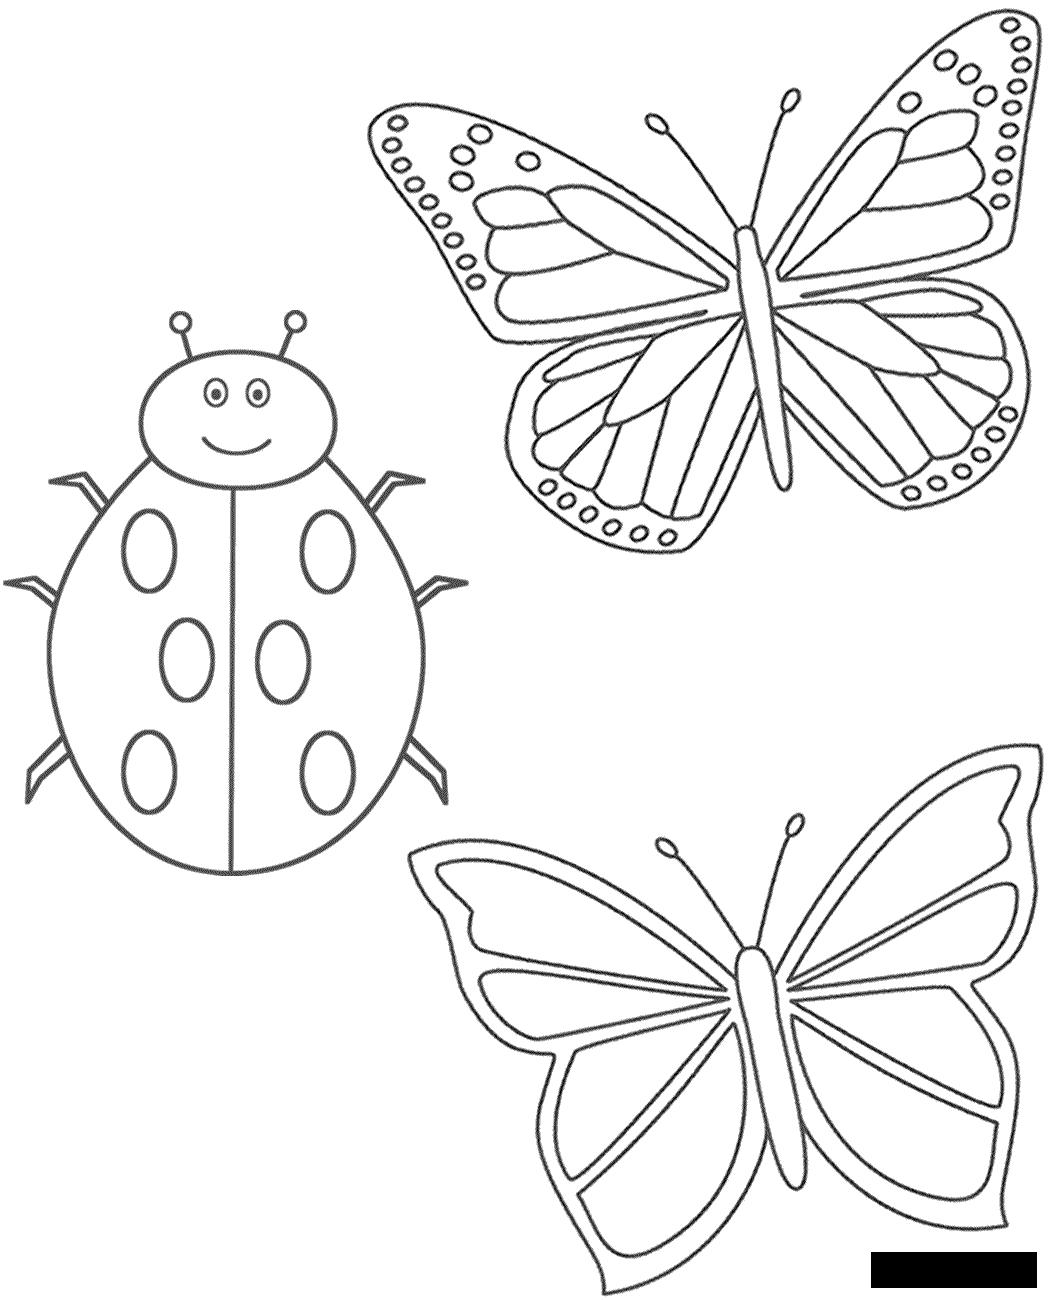 Раскраски Насекомые детские раскраски, раскраски для самых маленьких, насекомые, бабочка, гусеница